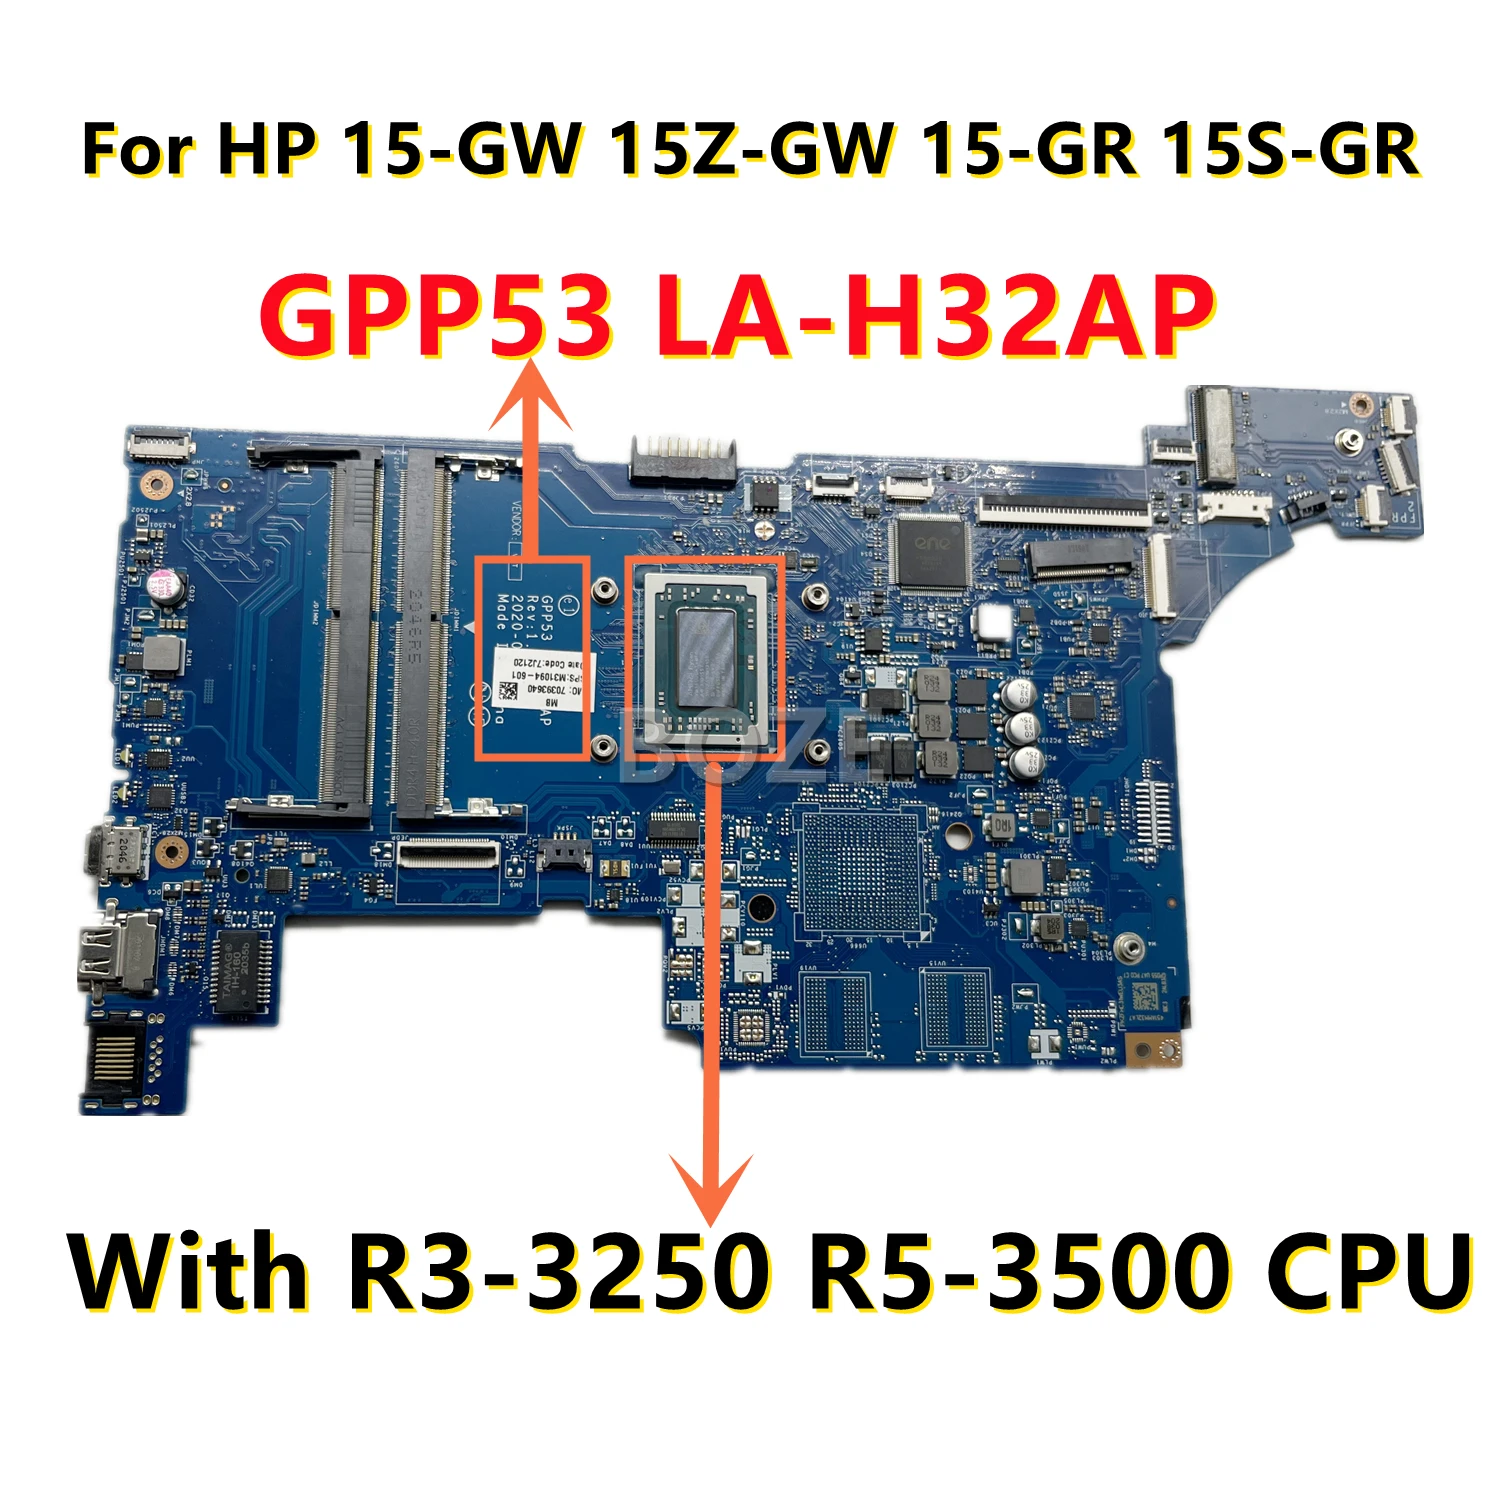 M03669-601 M04856-001 M27608-001 Для HP 15-GW 15Z-GW 15-GR 15S-GR Материнская плата ноутбука GPP53 LA-H32AP с процессором R3-3250 R5-3500